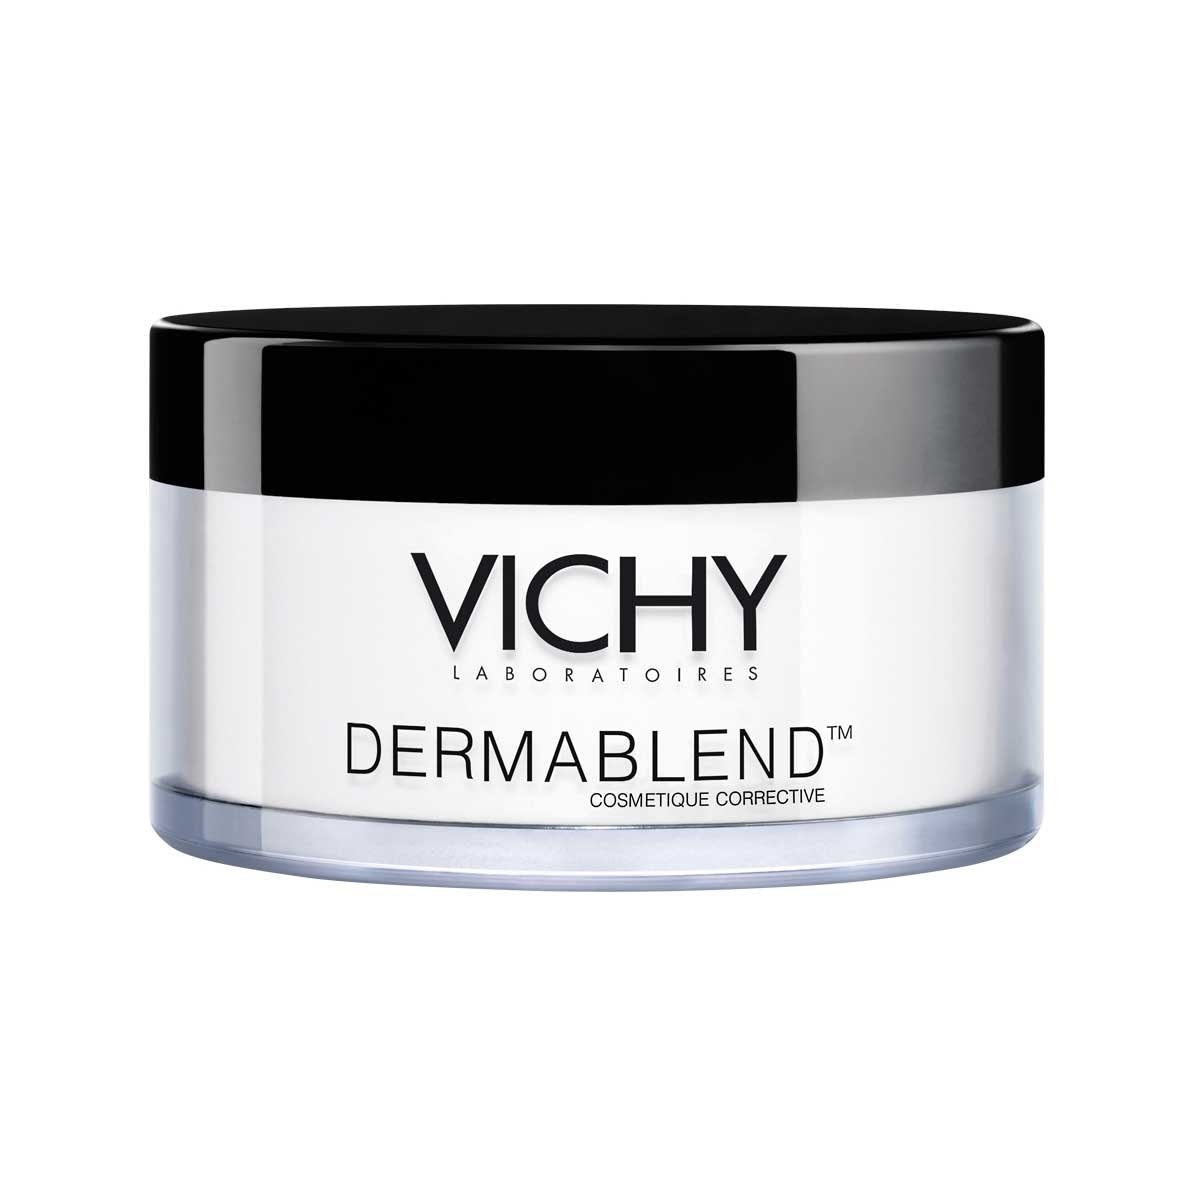 Dermablend Polvo Fijador de Maquillaje Traslucido, 28G Vichy